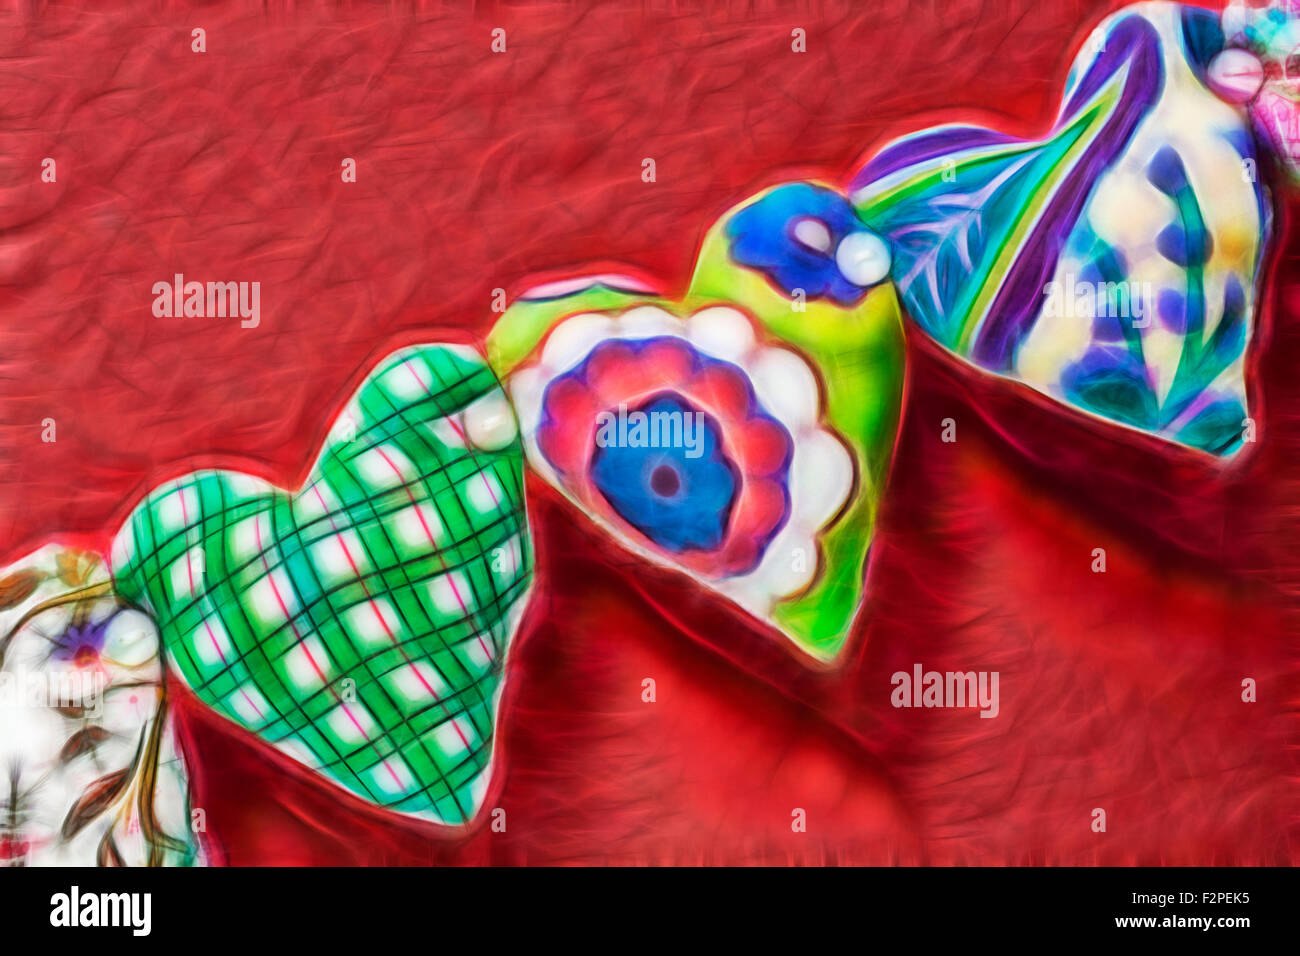 Abstract -Herz-String aus Stoff Material mit Knöpfen auf rotem Hintergrund mit Fractalius Filter angebracht - Fractals Fractal gesetzt Stockfoto